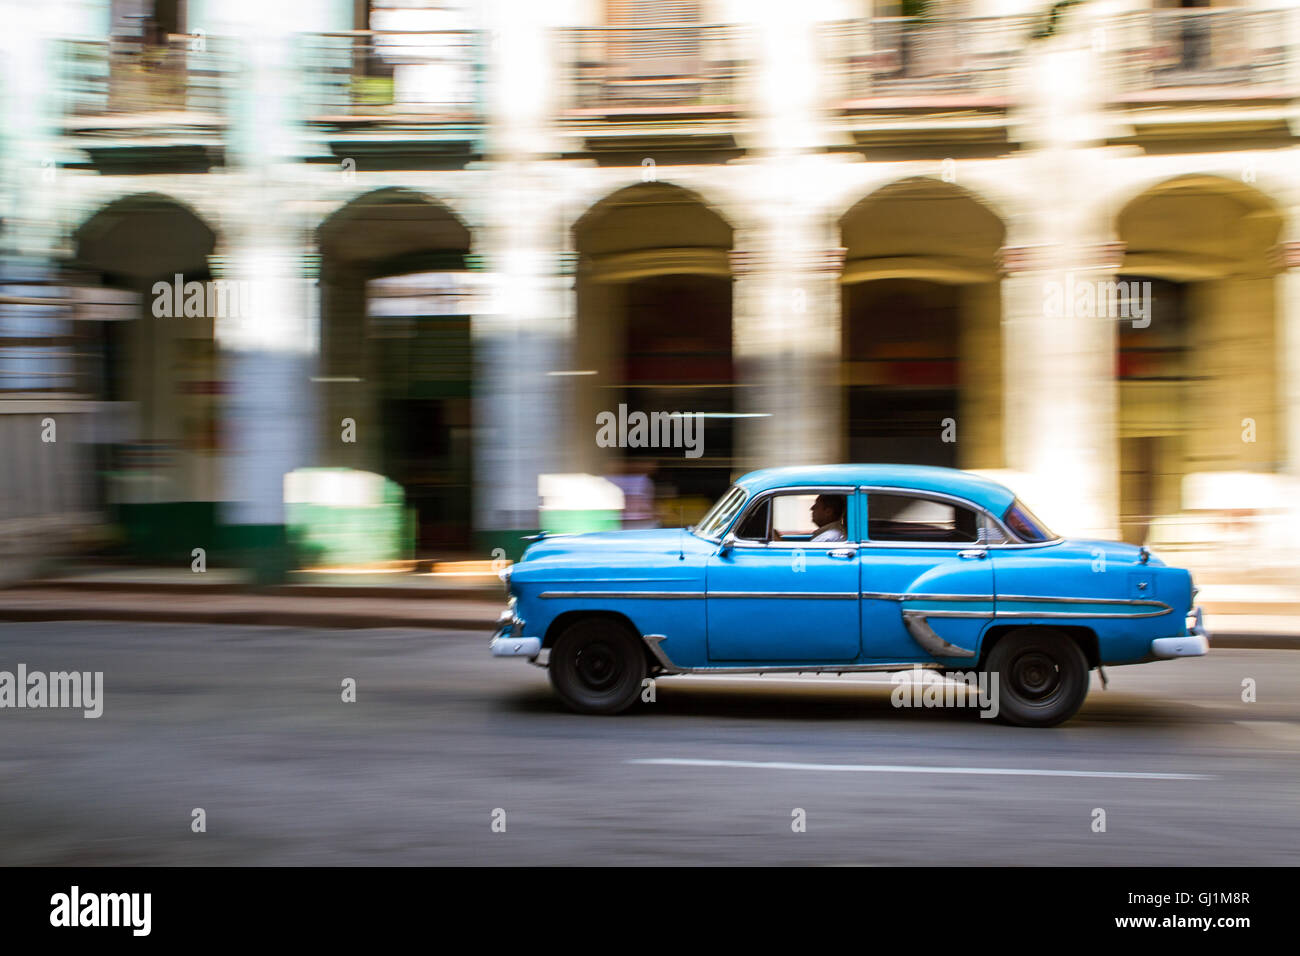 Panoramique de classic, vintage car aux beaux jours dans la rue coloniale, La Havane, Cuba, 2013 Banque D'Images